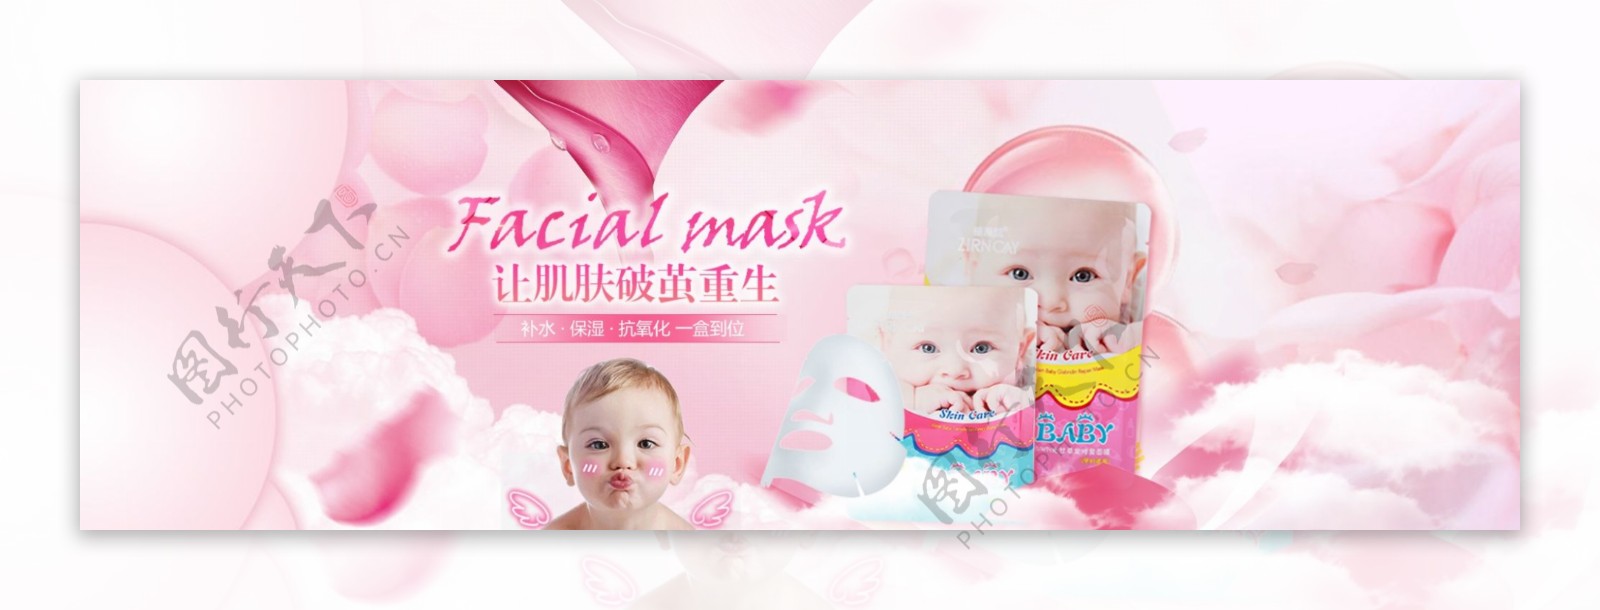 婴儿面膜化妆品海报